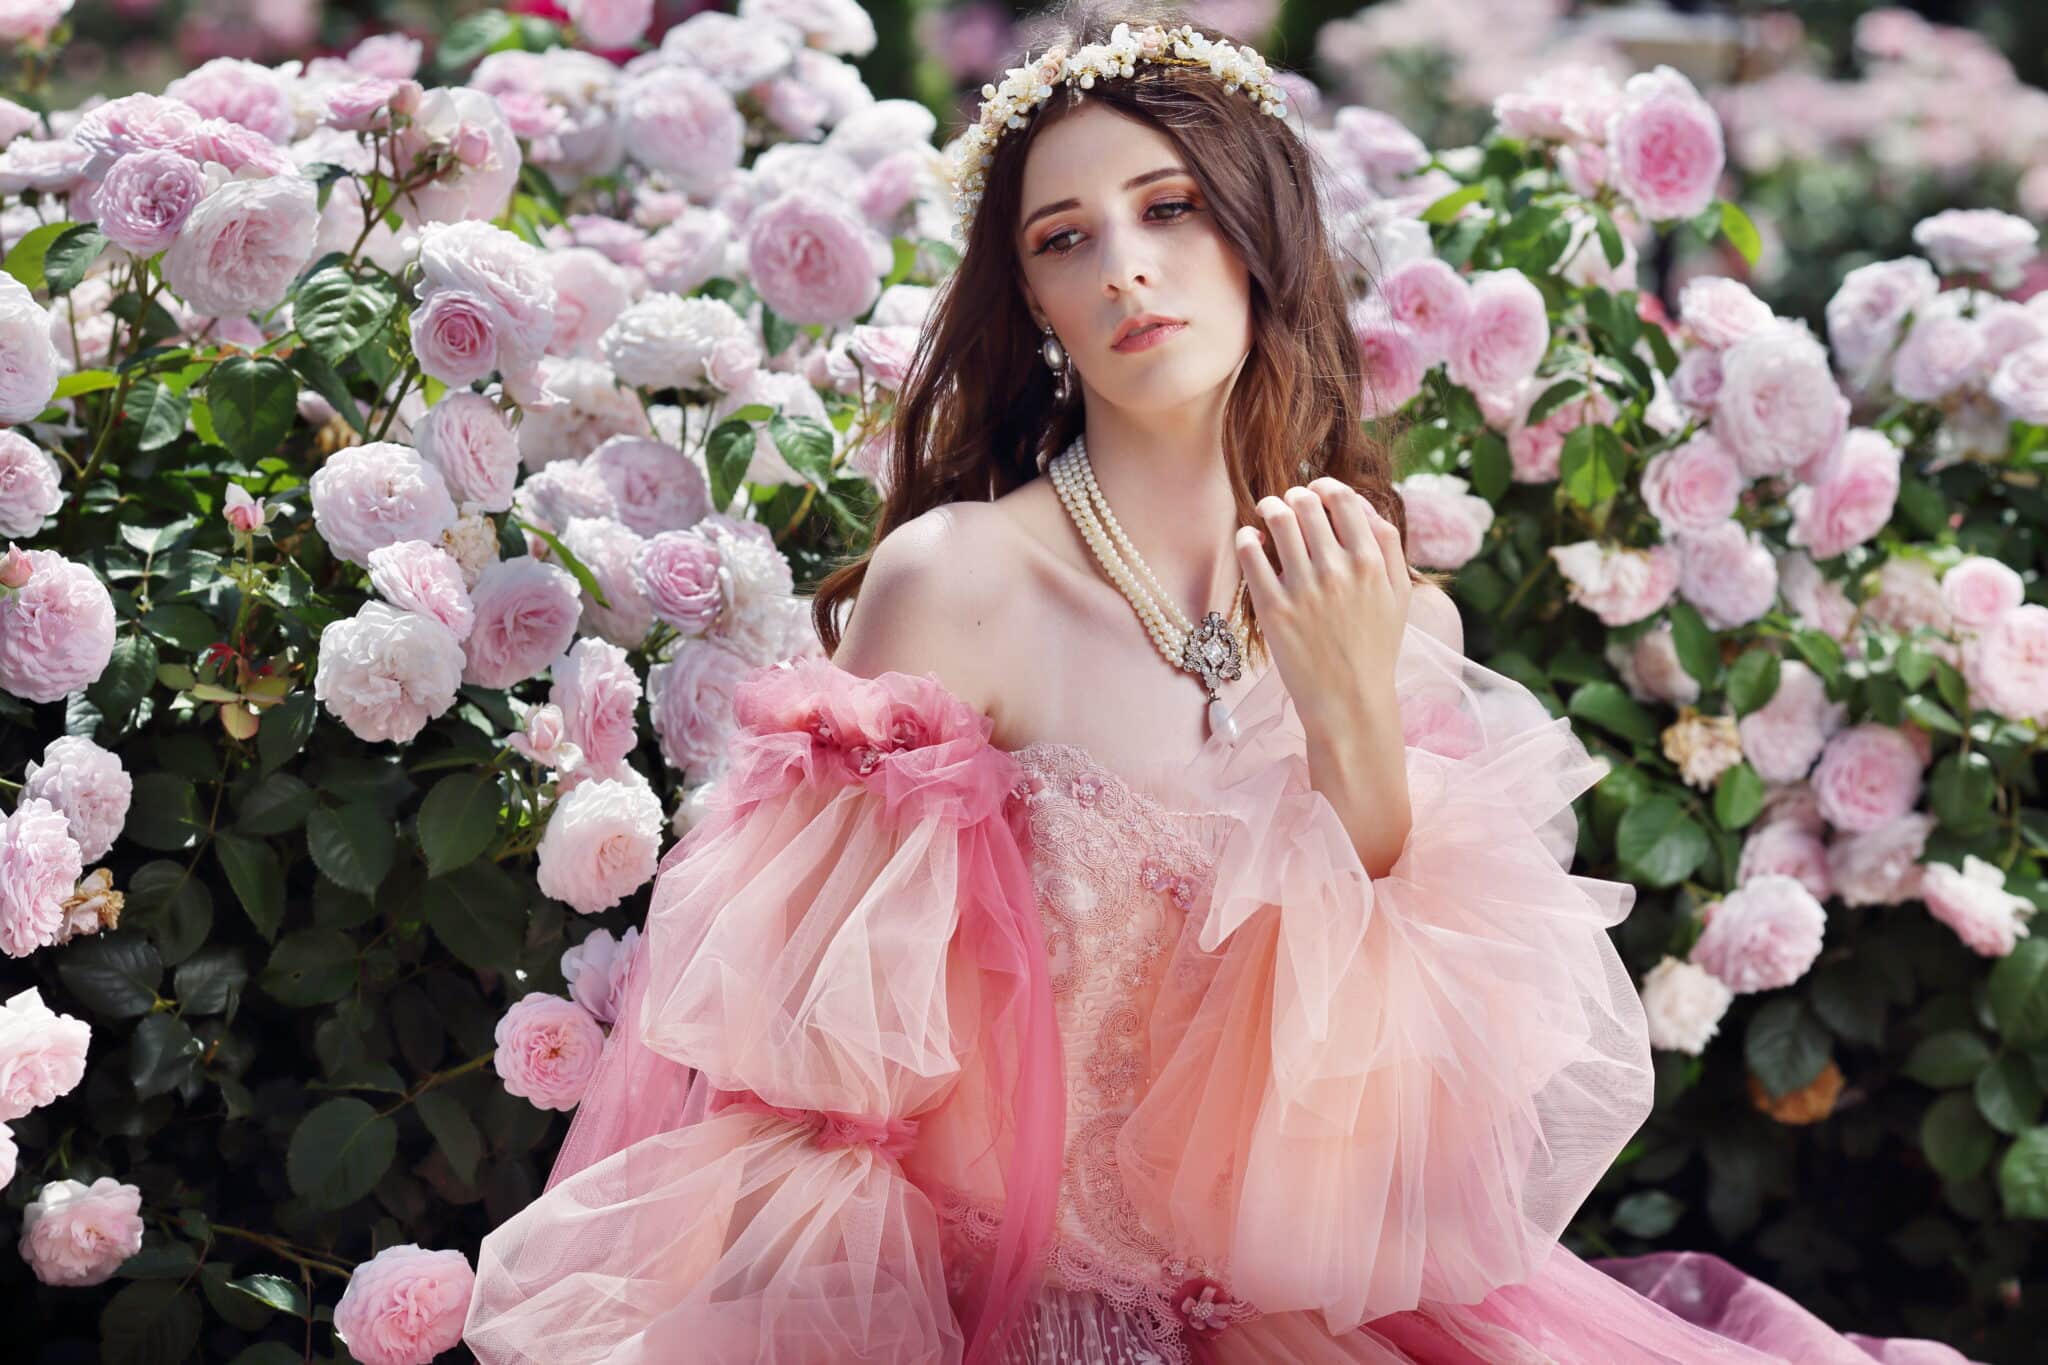 princess in a magic rose garden.